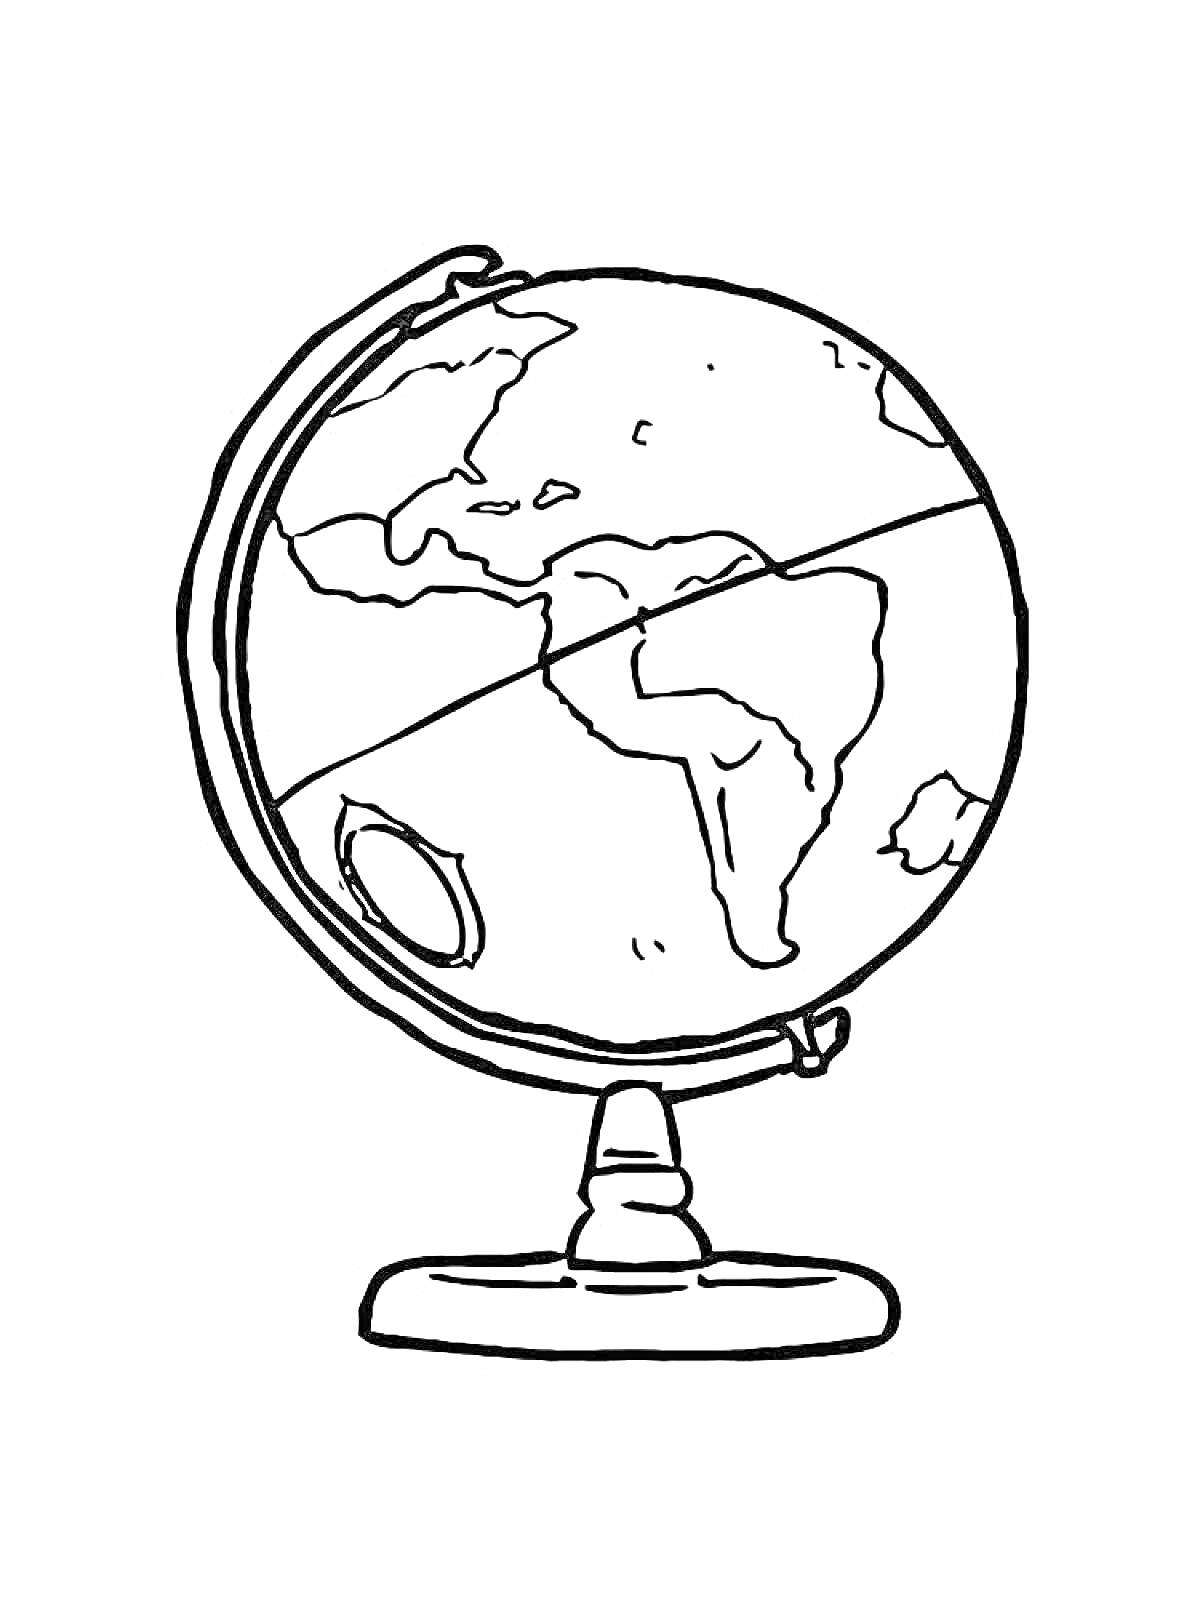 Раскраска Глобус с континентами на подставке